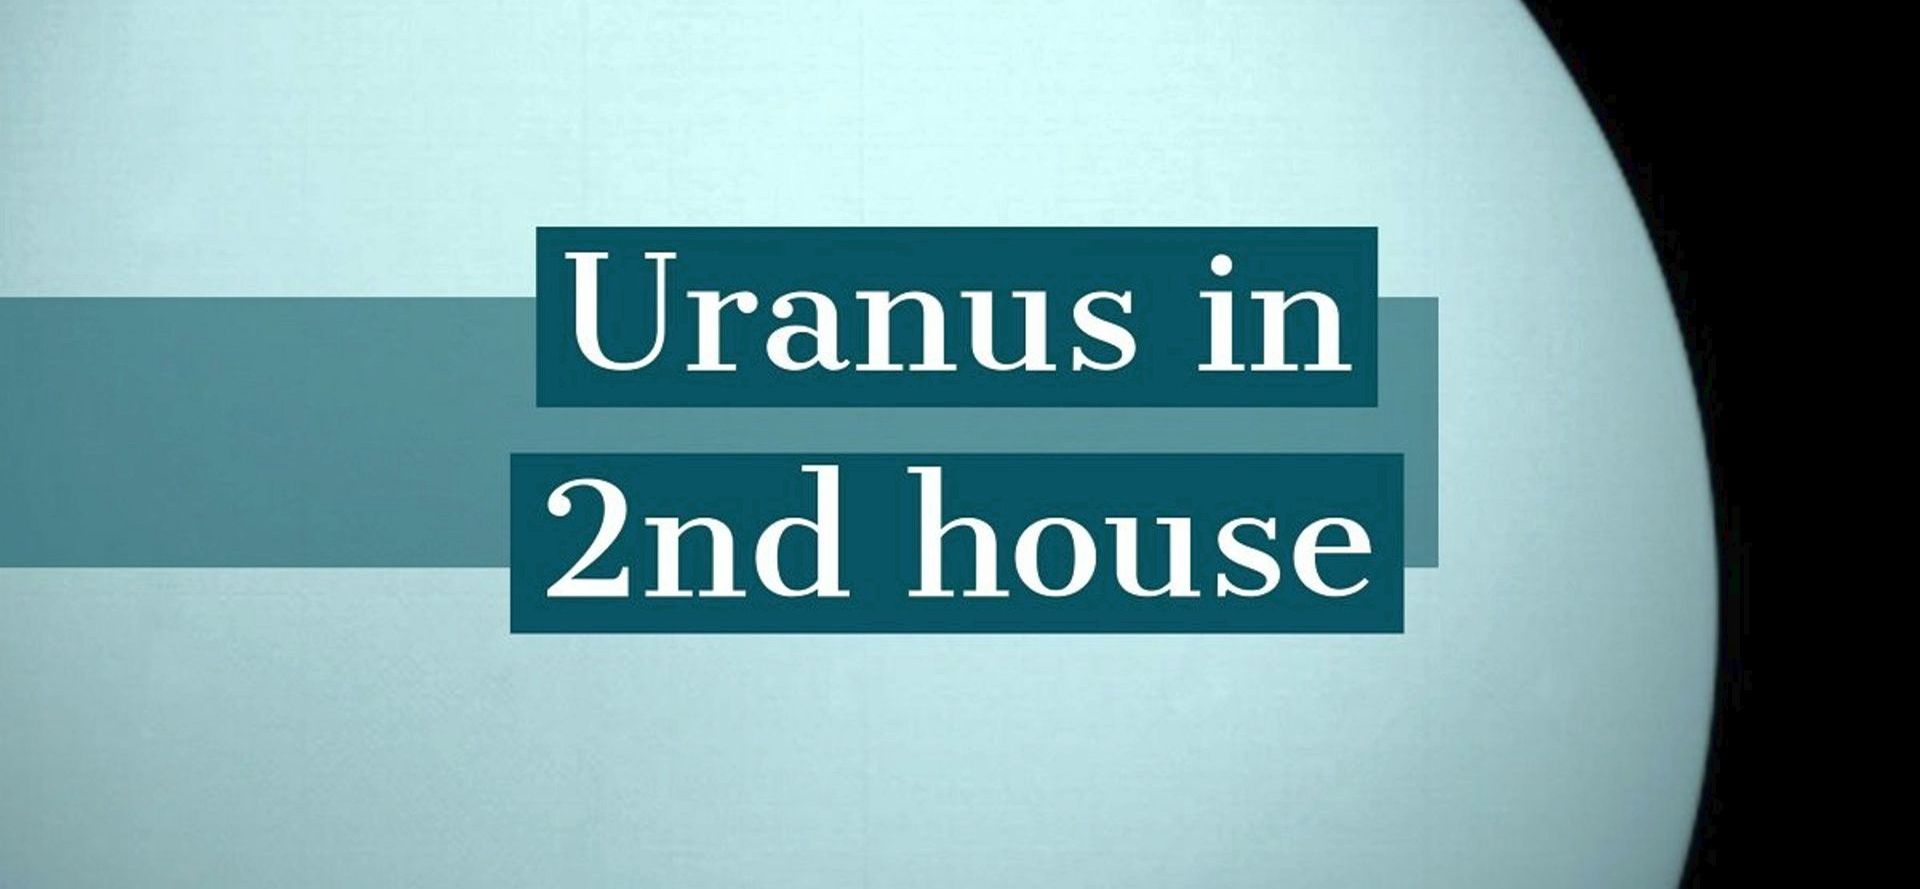 Uranus in 2nd house.